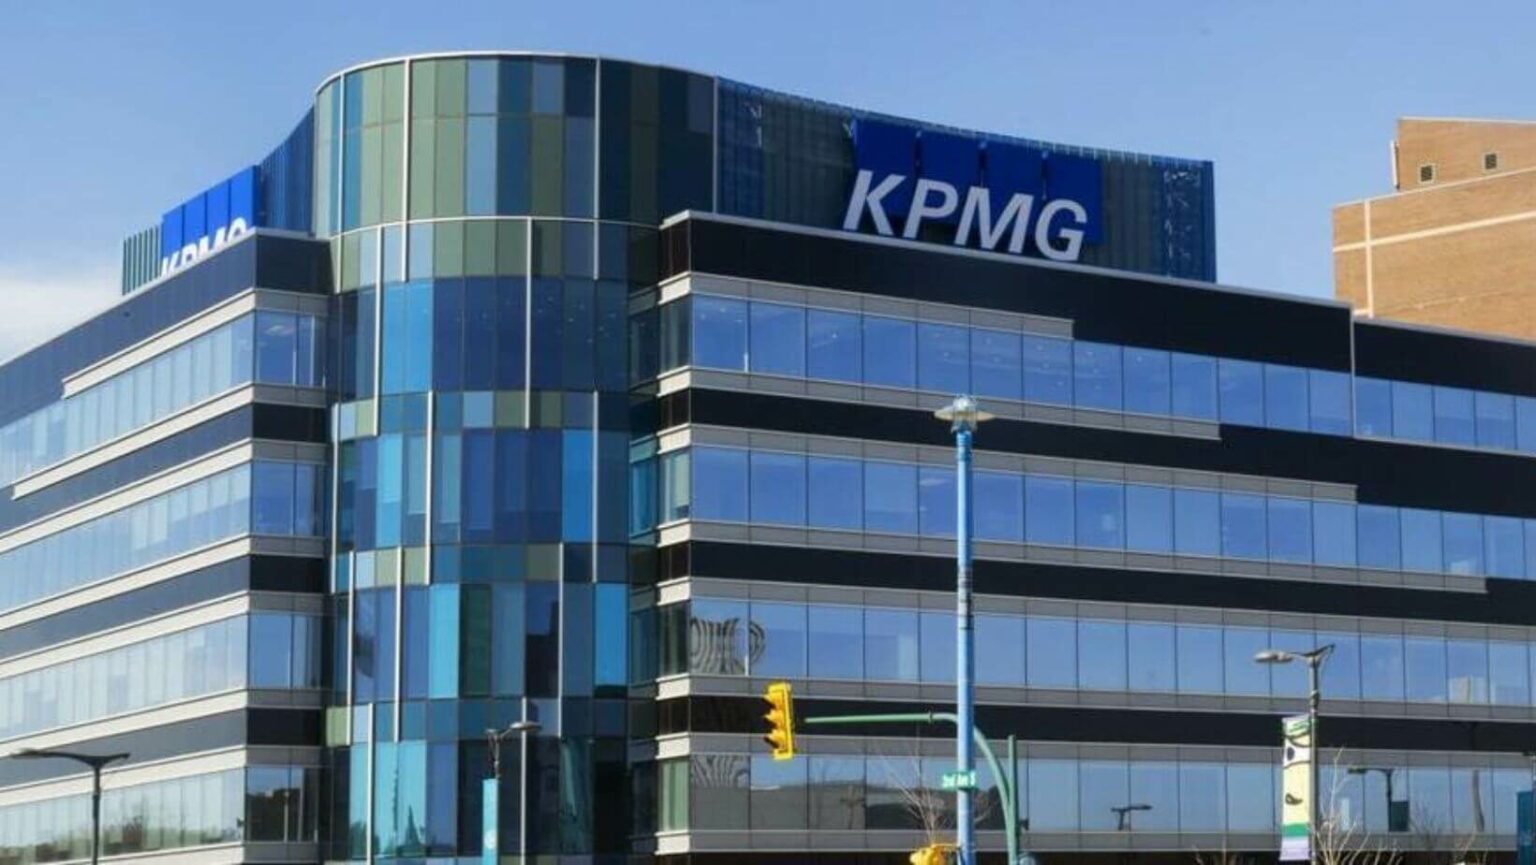 KPMG and Microsoft